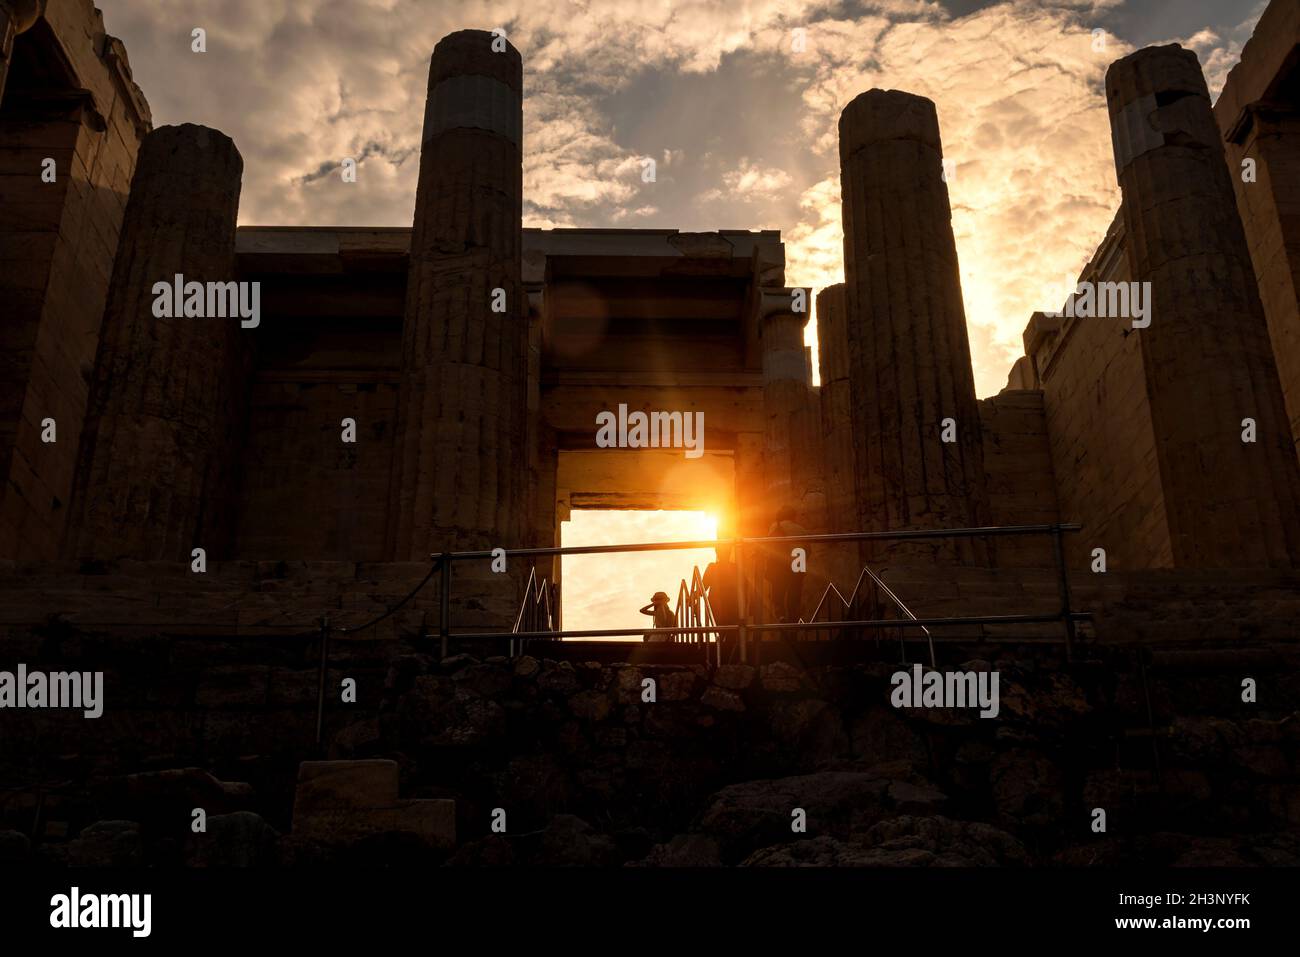 Acropoli di Atene al tramonto, Grecia. Vista soleggiata di Propylea, vecchio ingresso all'Acropoli. E' un'attrazione turistica di Atene. Scenario di Gree Antica Foto Stock